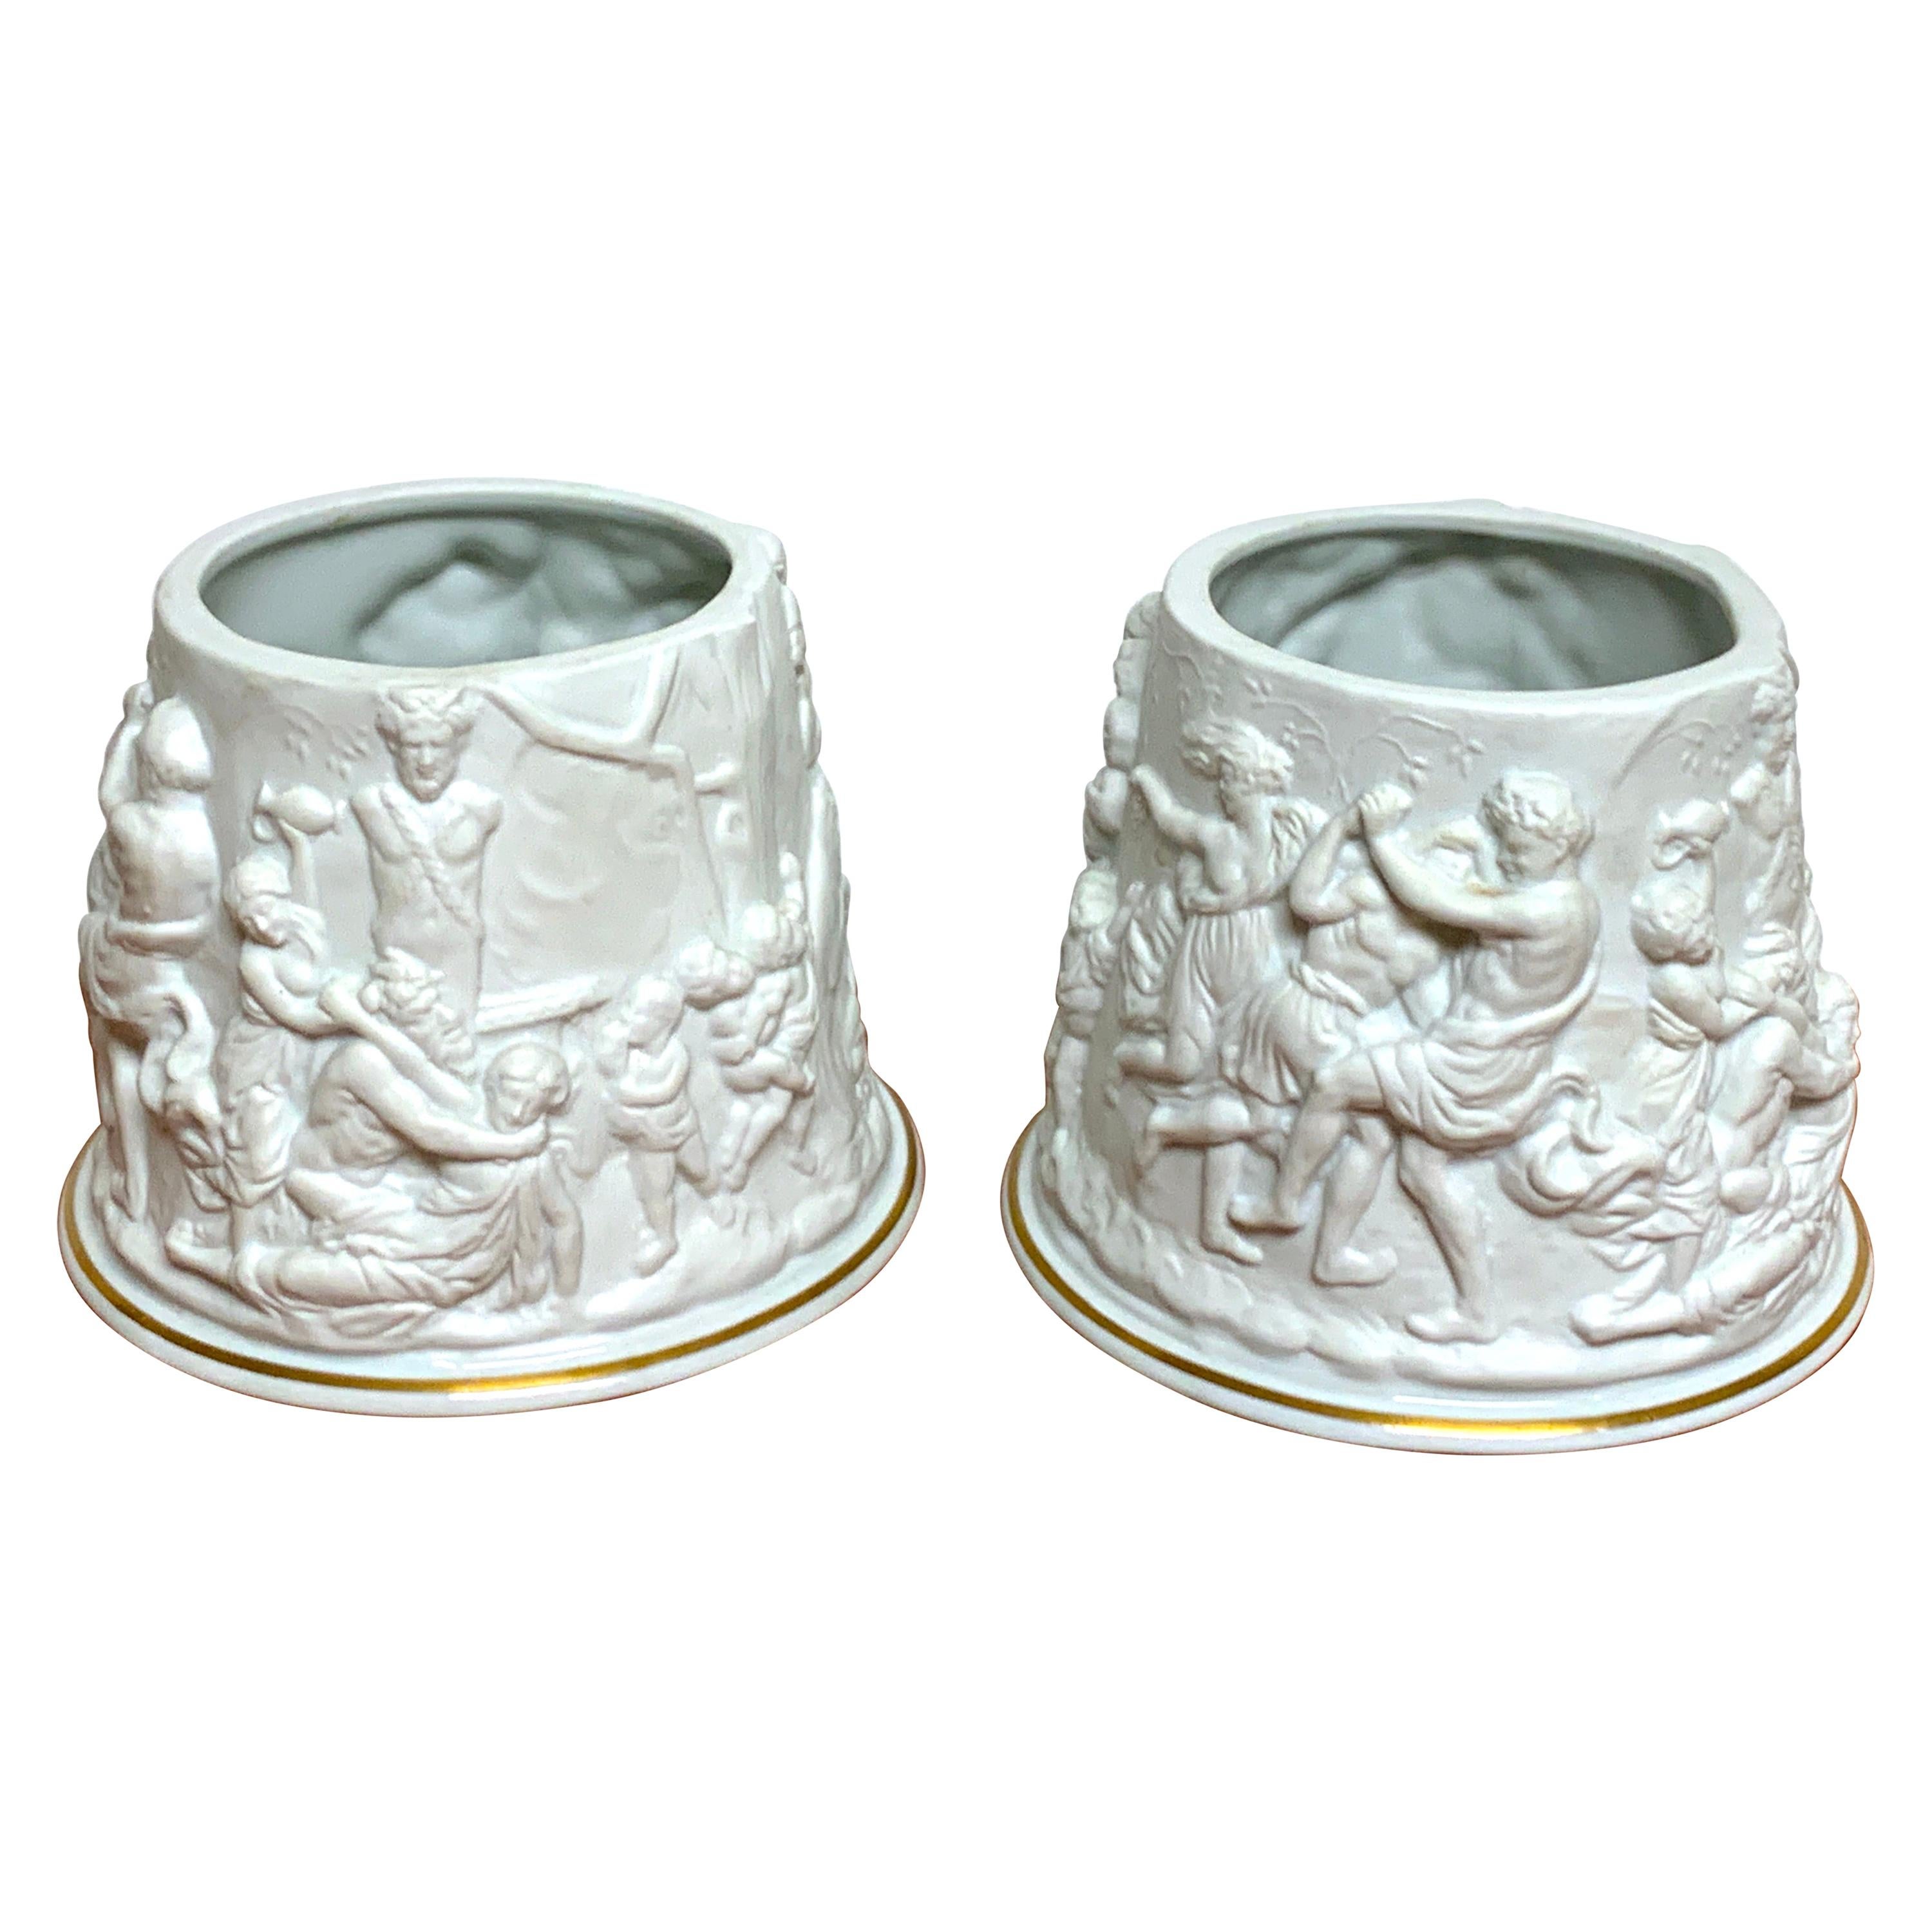 Pair of Naples/Capodimonte Porcelain Blanc de Chine Bacchanalian Cachepots